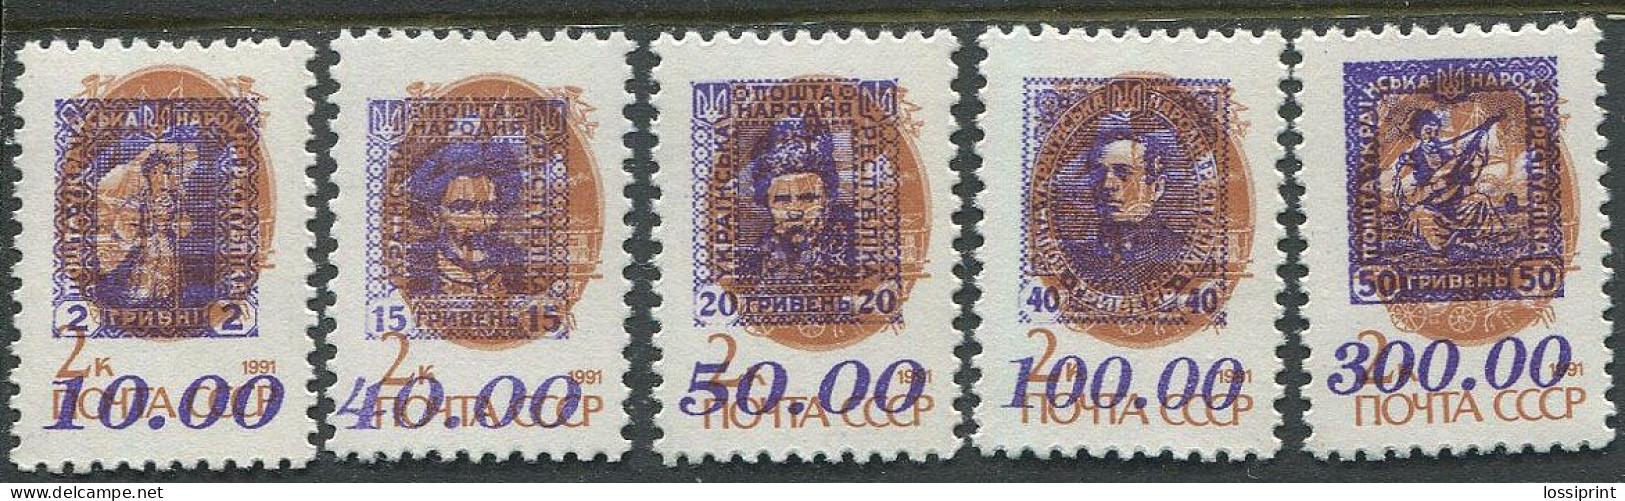 Ukraina:Ukraine:Unused Overprinted Stamps Serie, Krim Peninsula, Famous People, Probably 1993, MNH - Ukraine